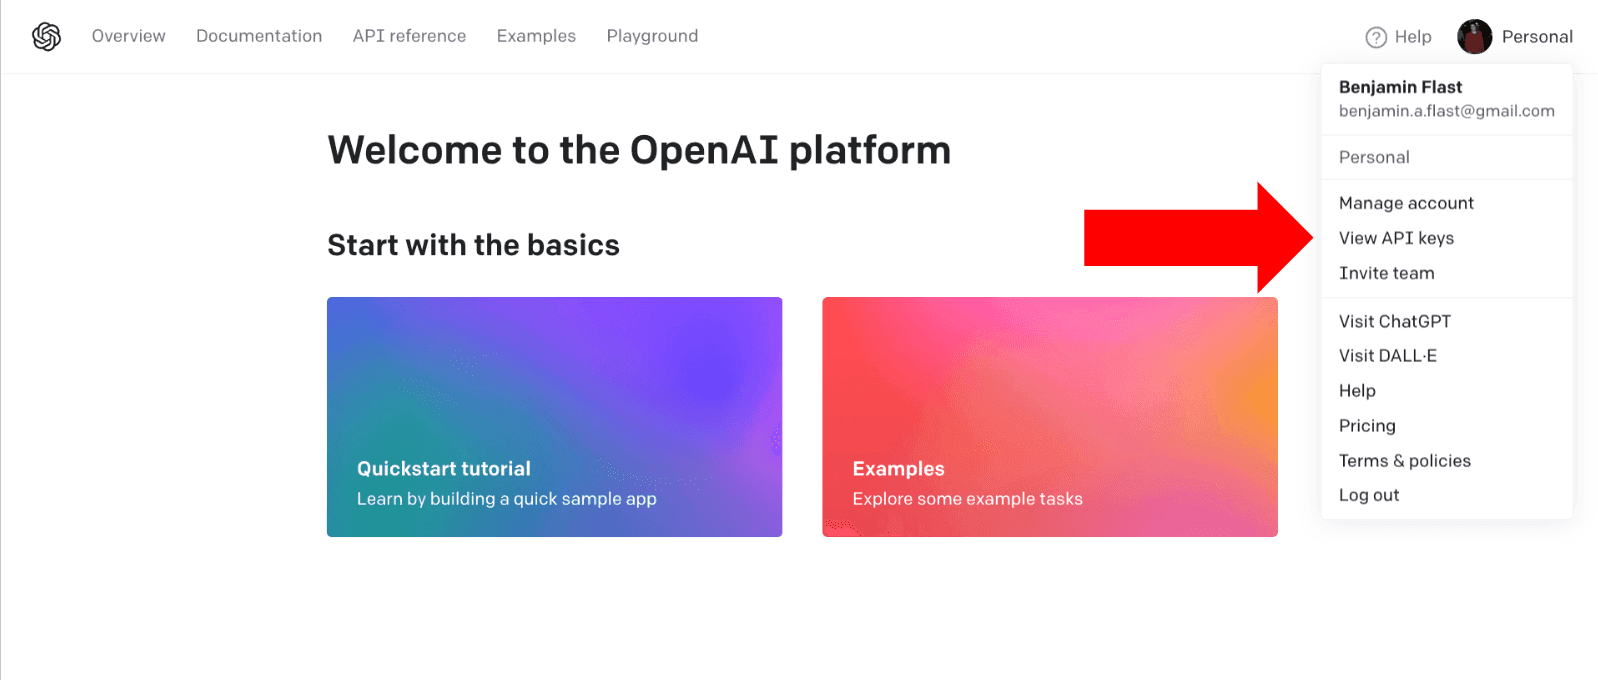 Open AI Key